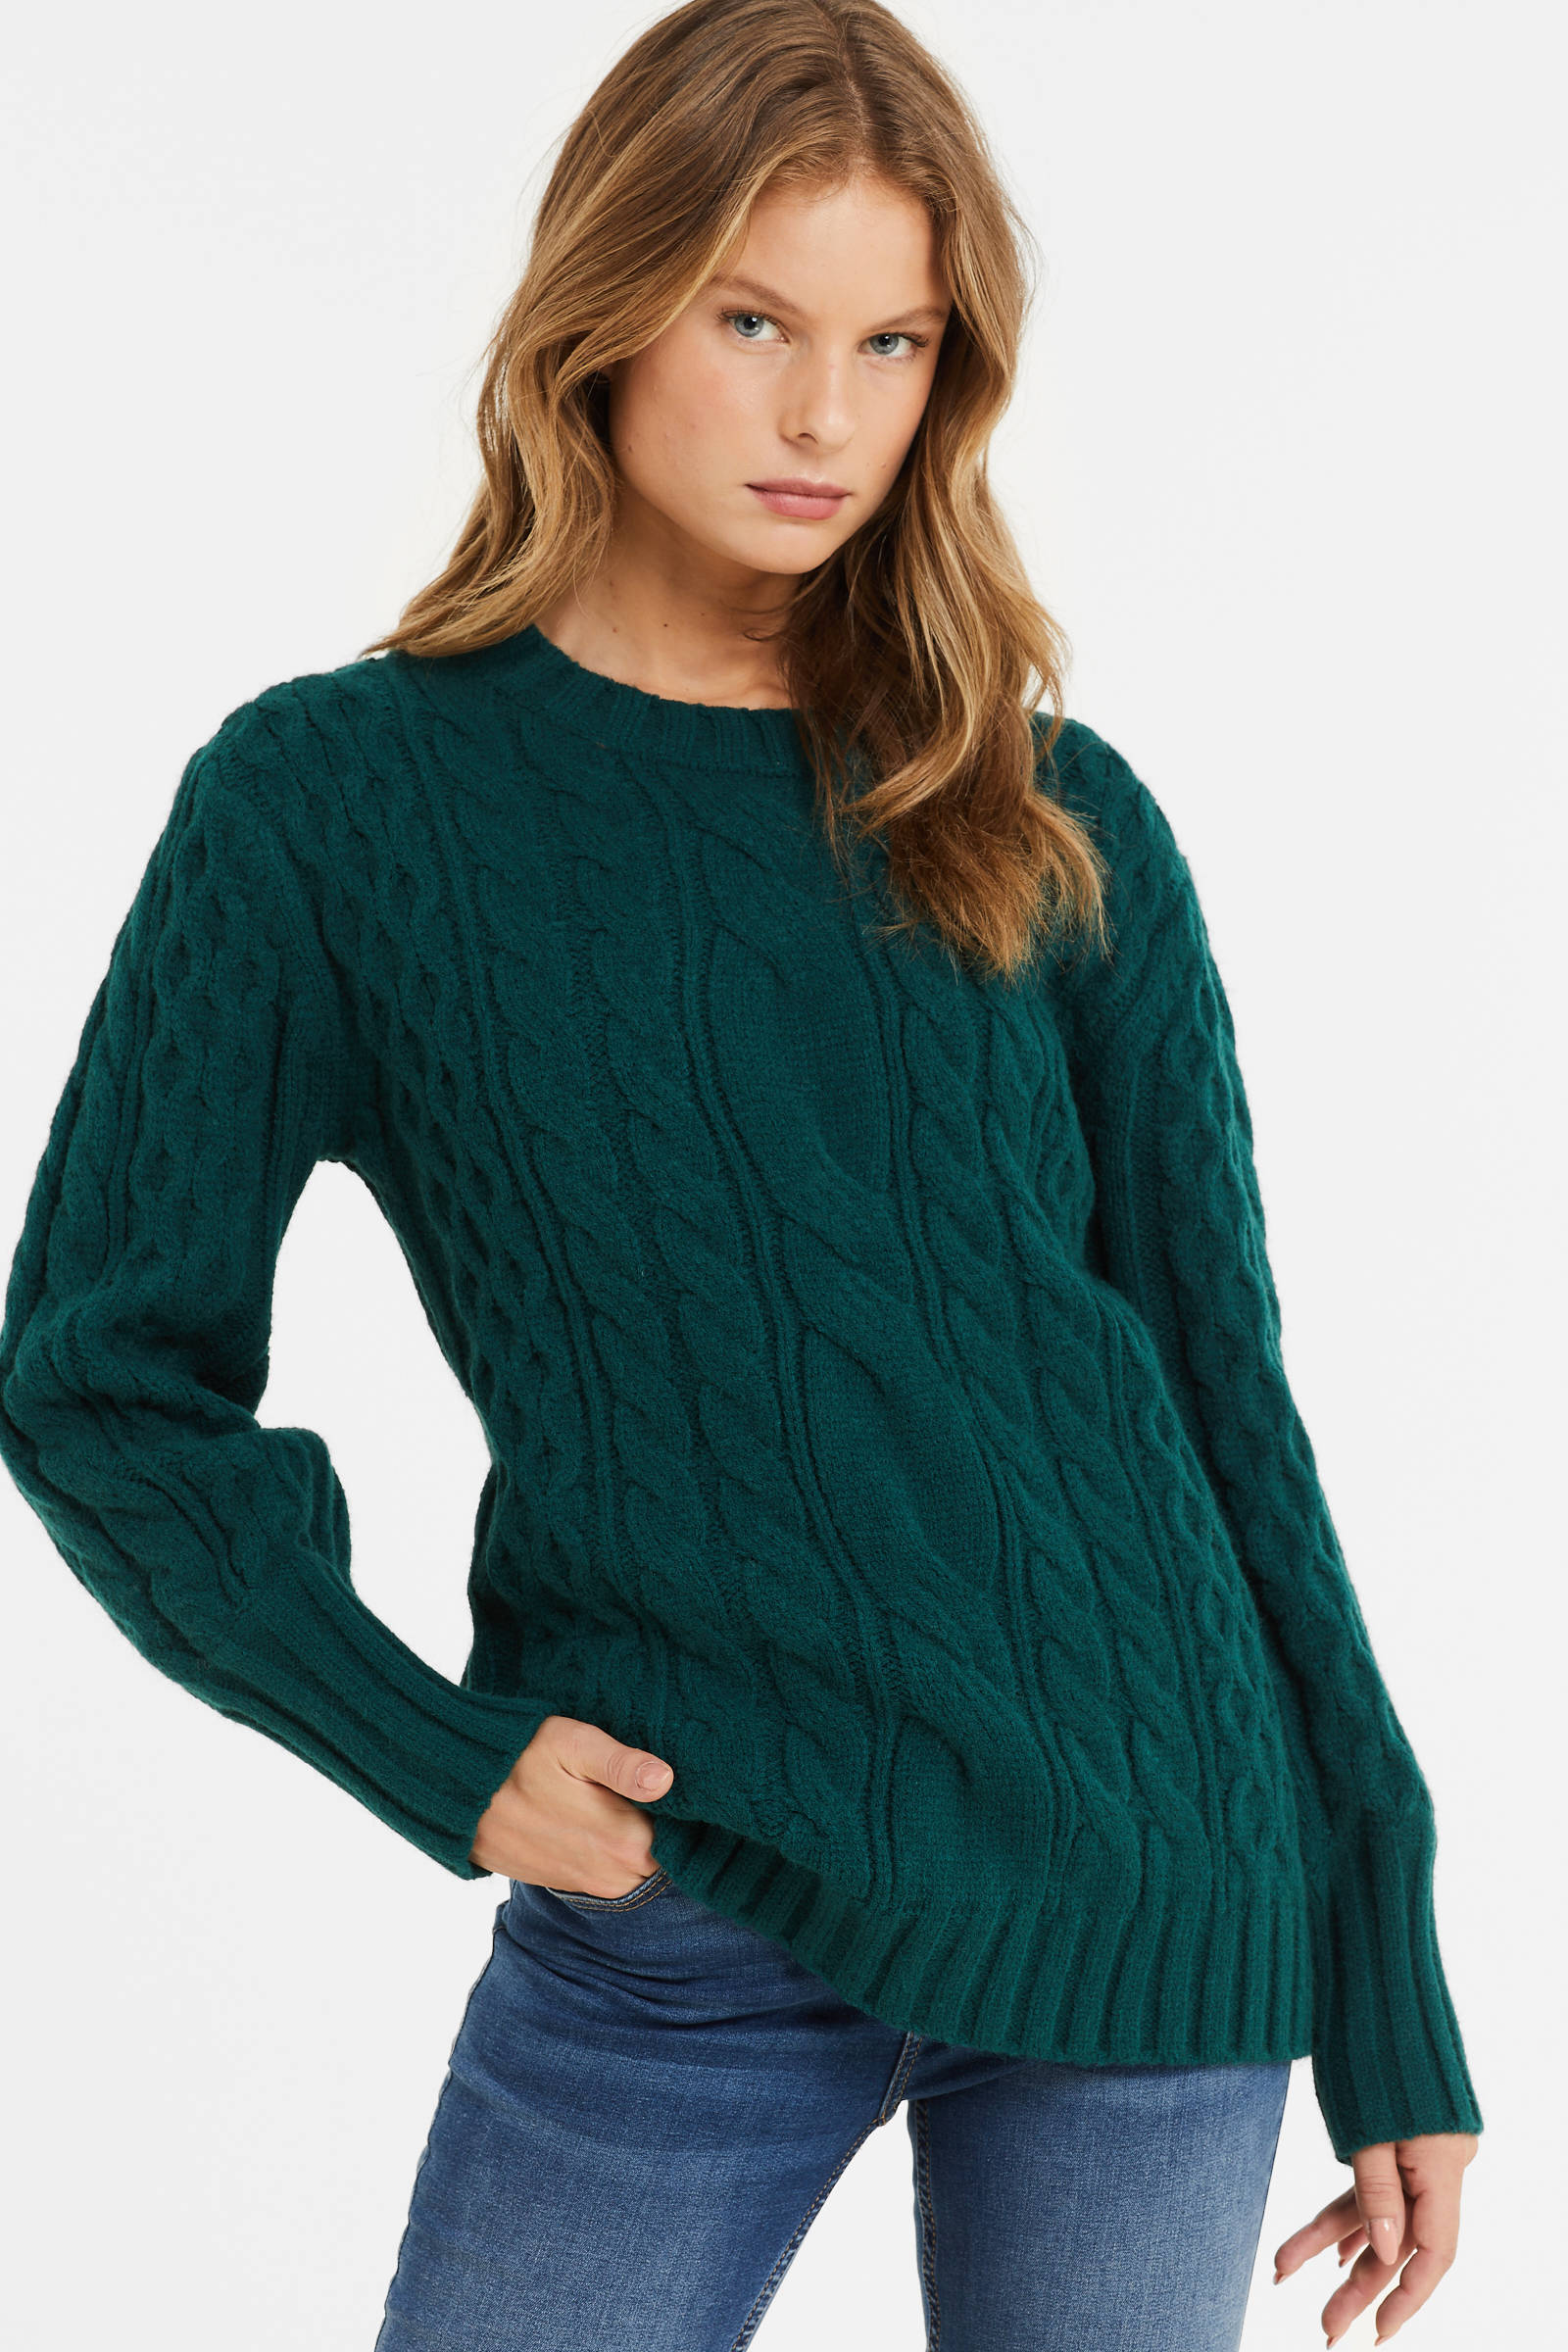 Kleding Dameskleding Sweaters Pullovers geometrische groene trui 